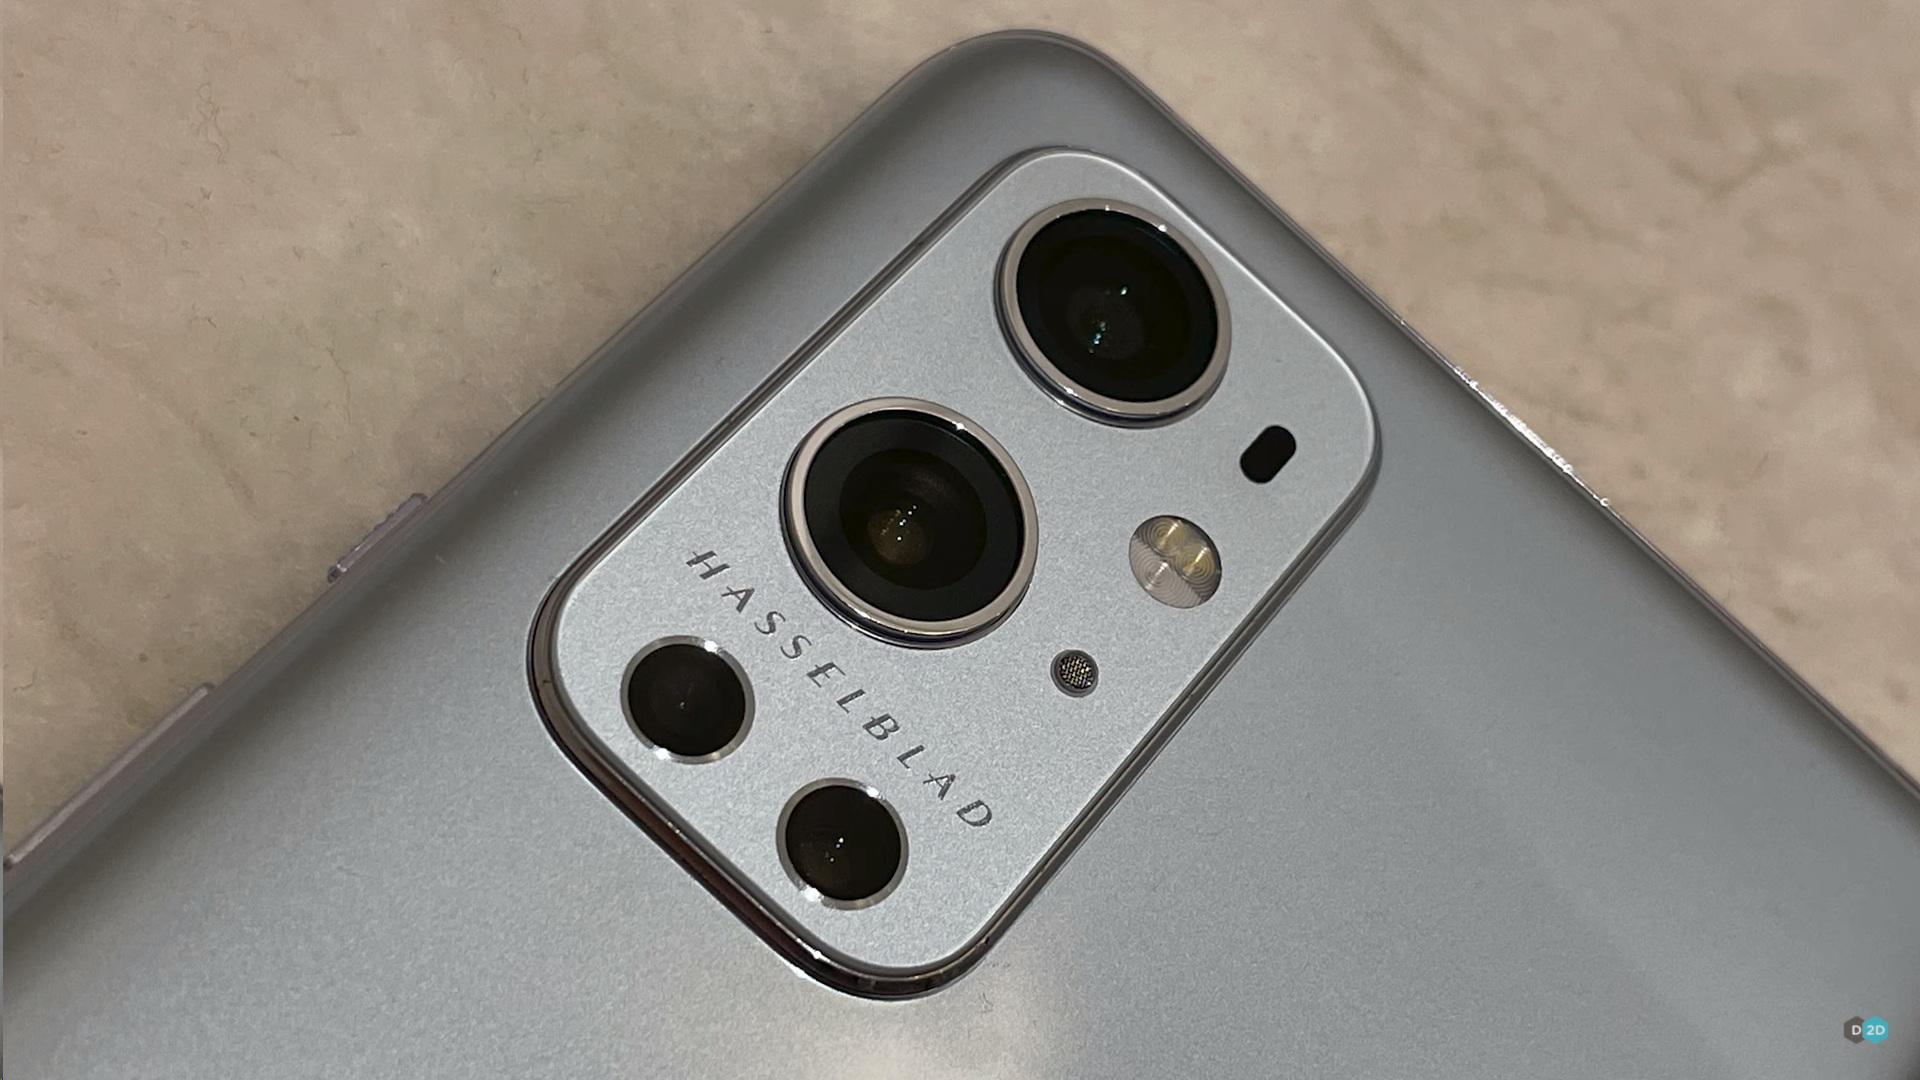  Живые фото OnePlus 9 Pro с камерой Hasselblad Другие устройства  - oneplus_9_pro_s_kameroj_hasselblad_vpervye_na_zhivyh_foto_picture2_1